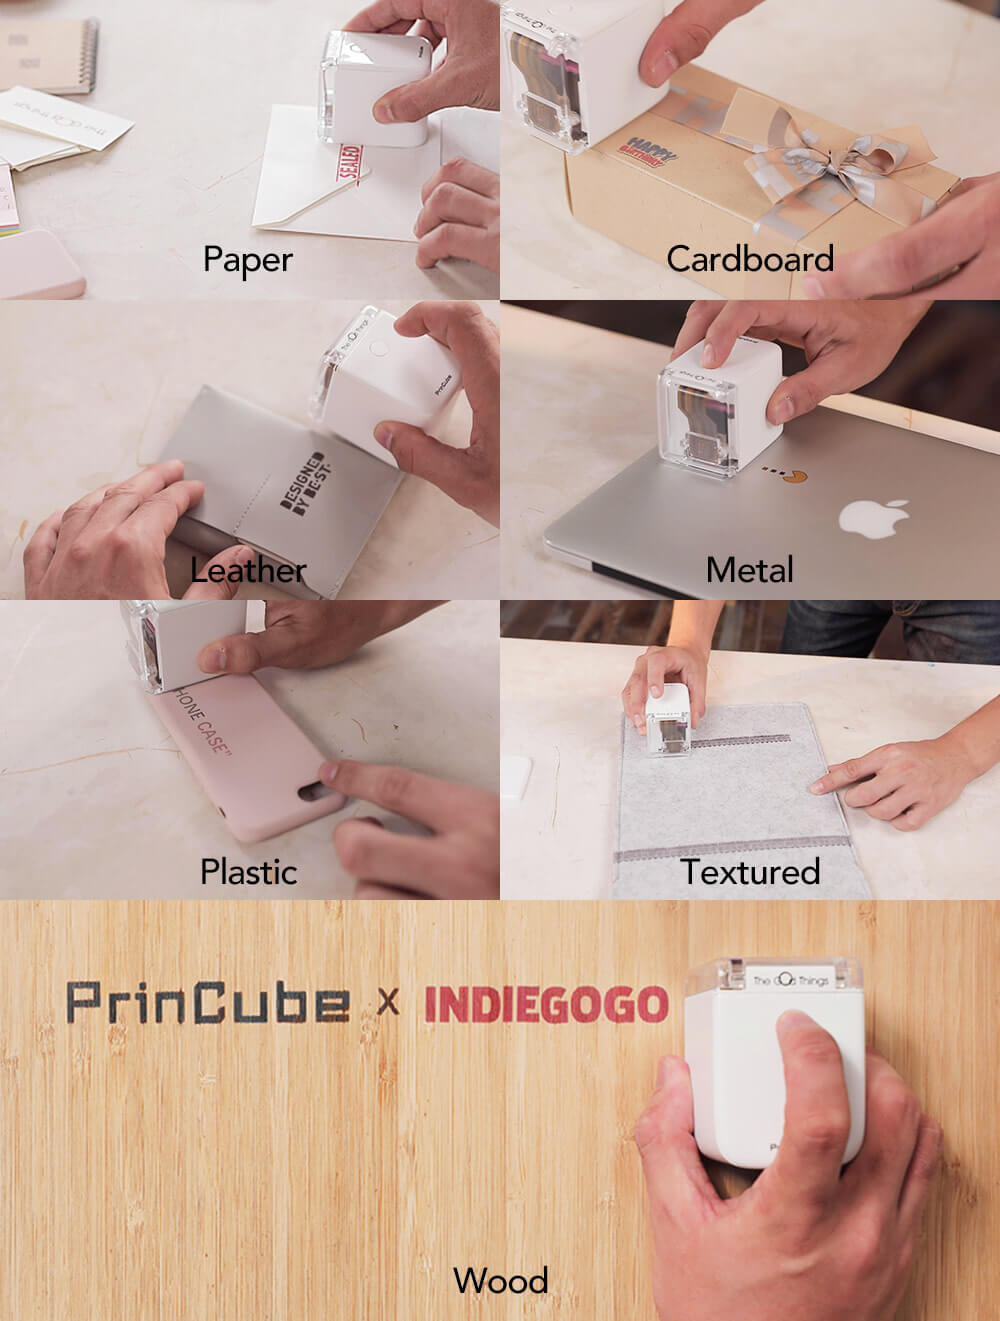 PrinCube - どこでもフルカラー印刷できる1万円ハンディプリンター、紙に木や布にも - AndroPlus